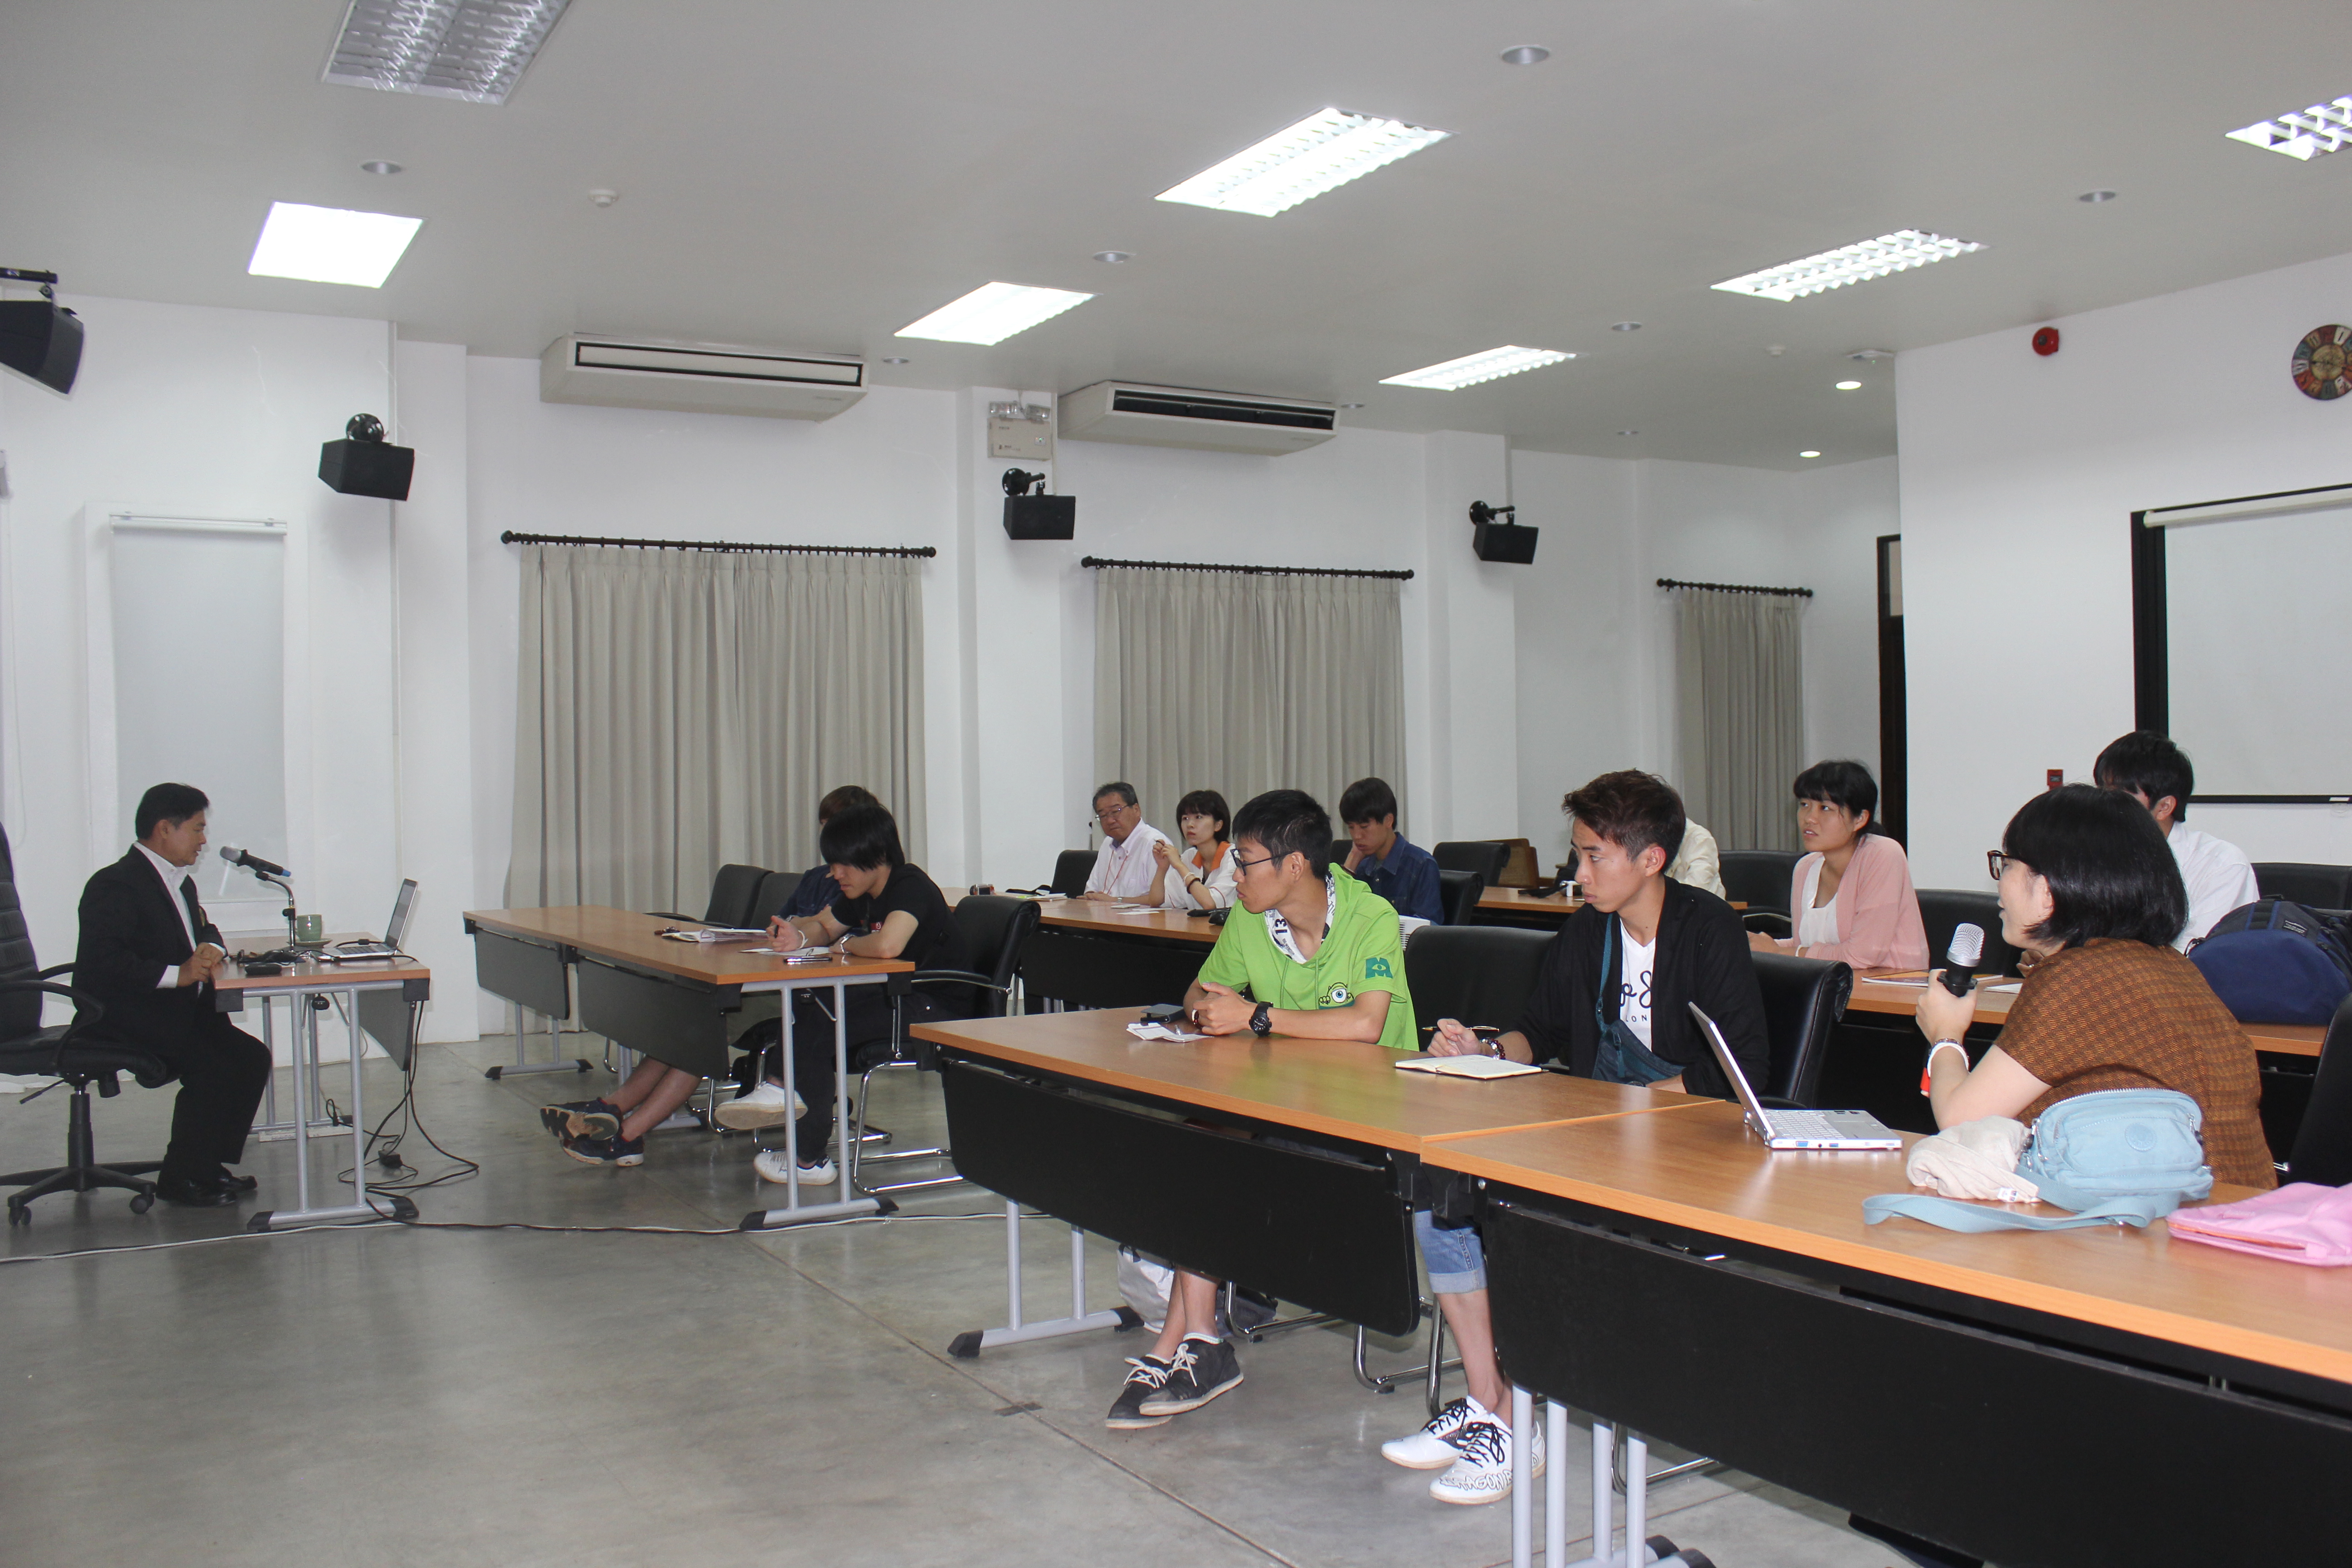 โครงการอบรมเชิงปฏิบัติการด้านศิลปวัฒนธรรมศึกษาสำหรับนักศึกษาและคณาจารย์จาก Chukyo University ประเทศญี่ปุ่น